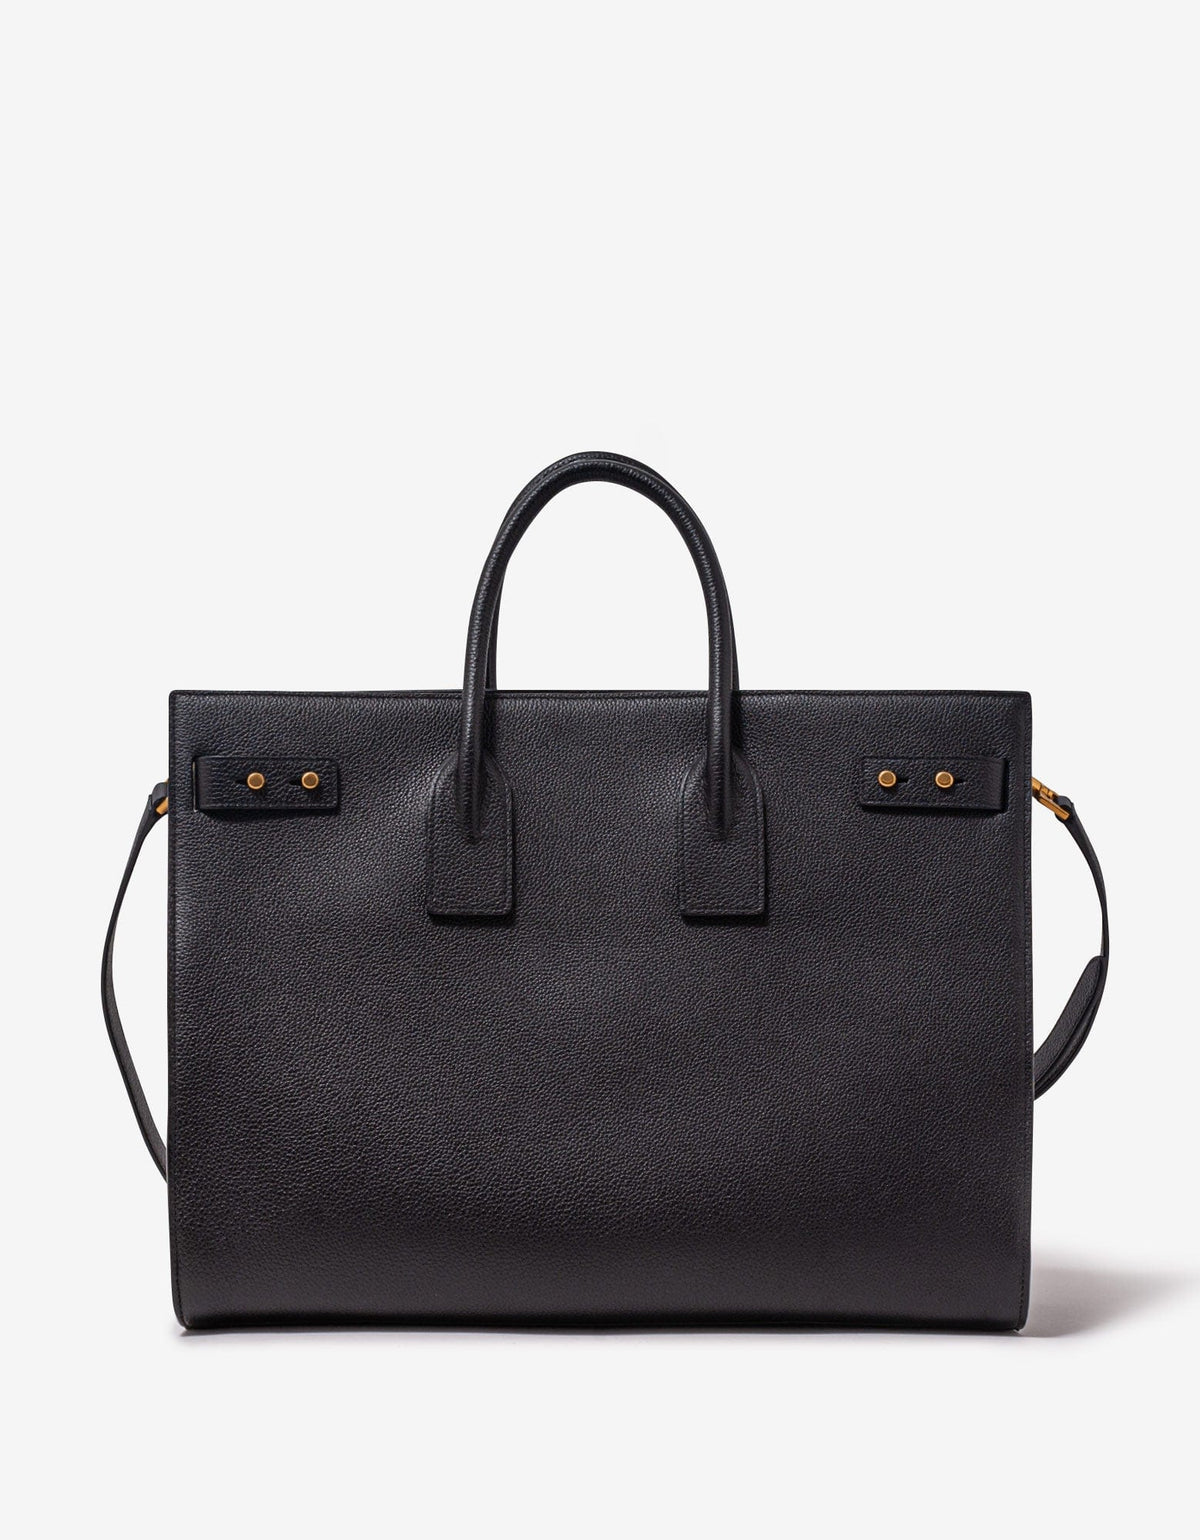 Saint Laurent Black Leather Thin Large Bag